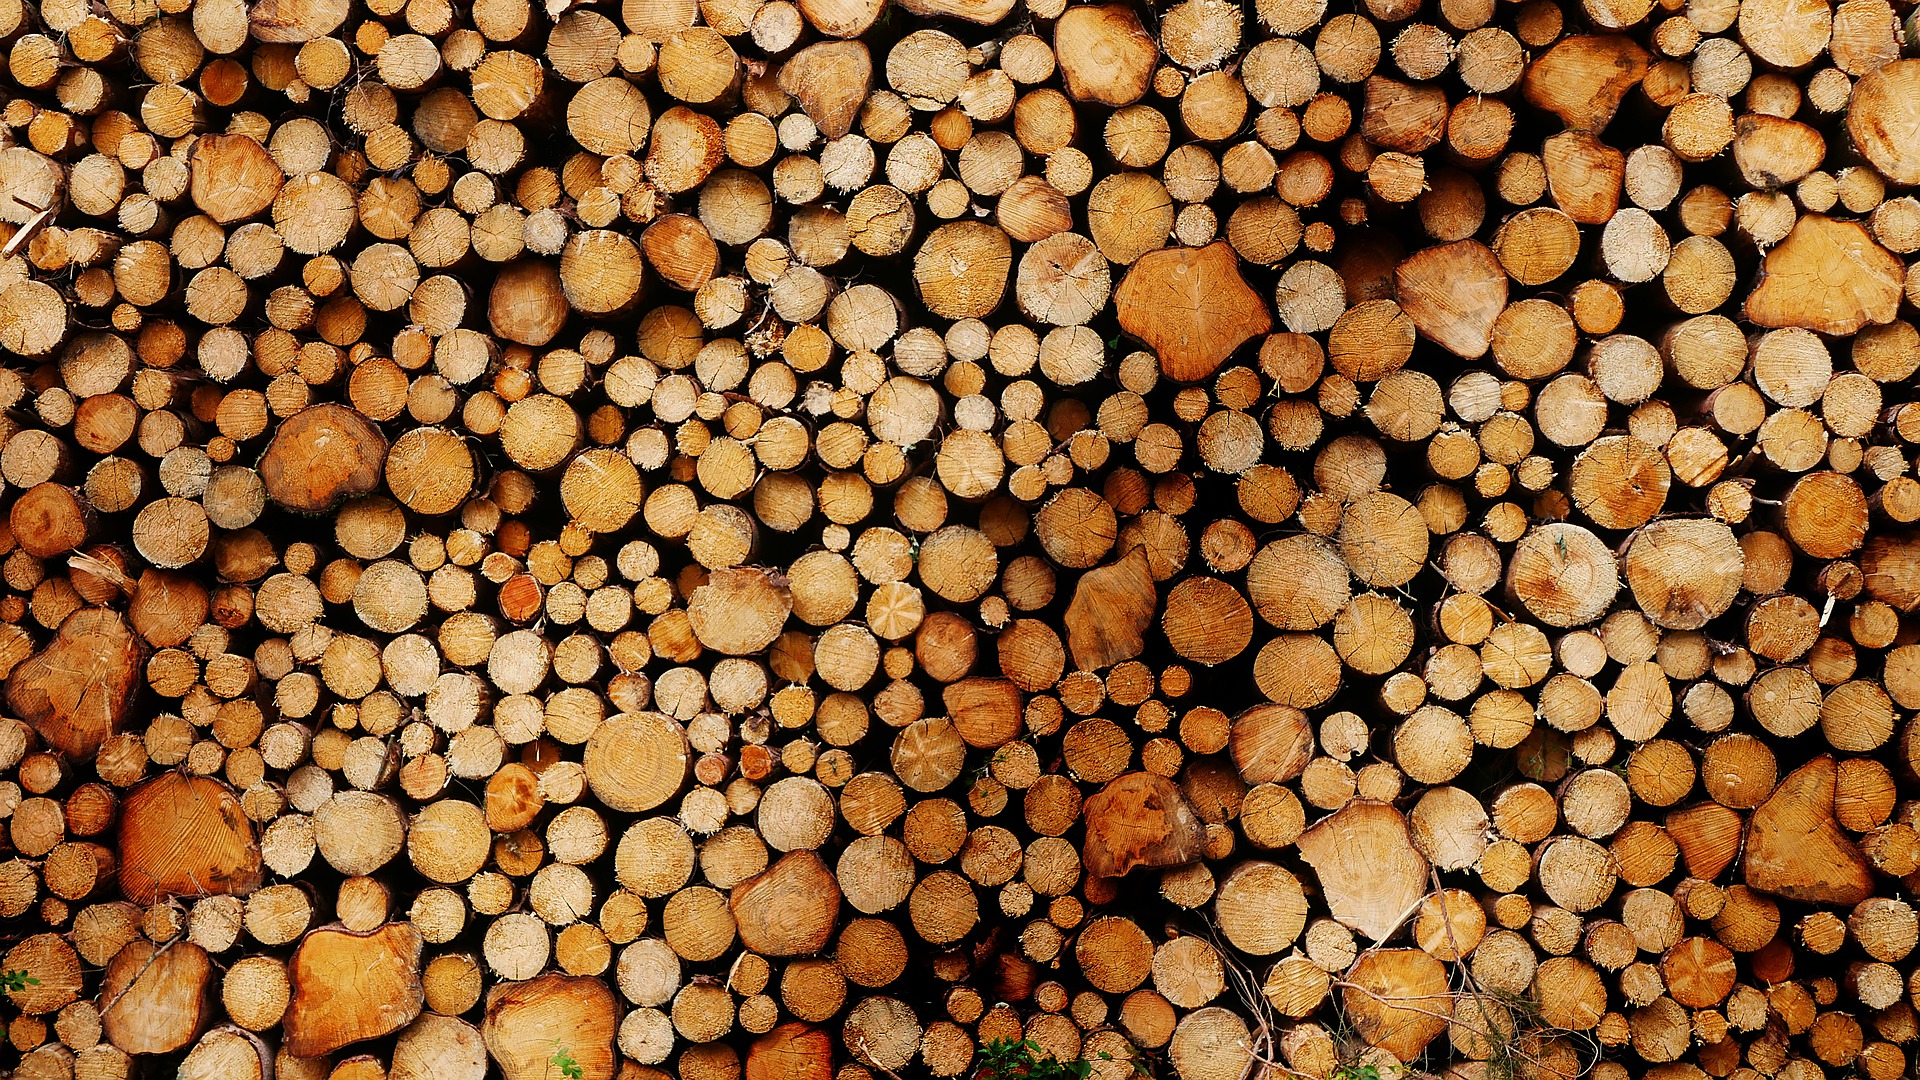 Woody biomass